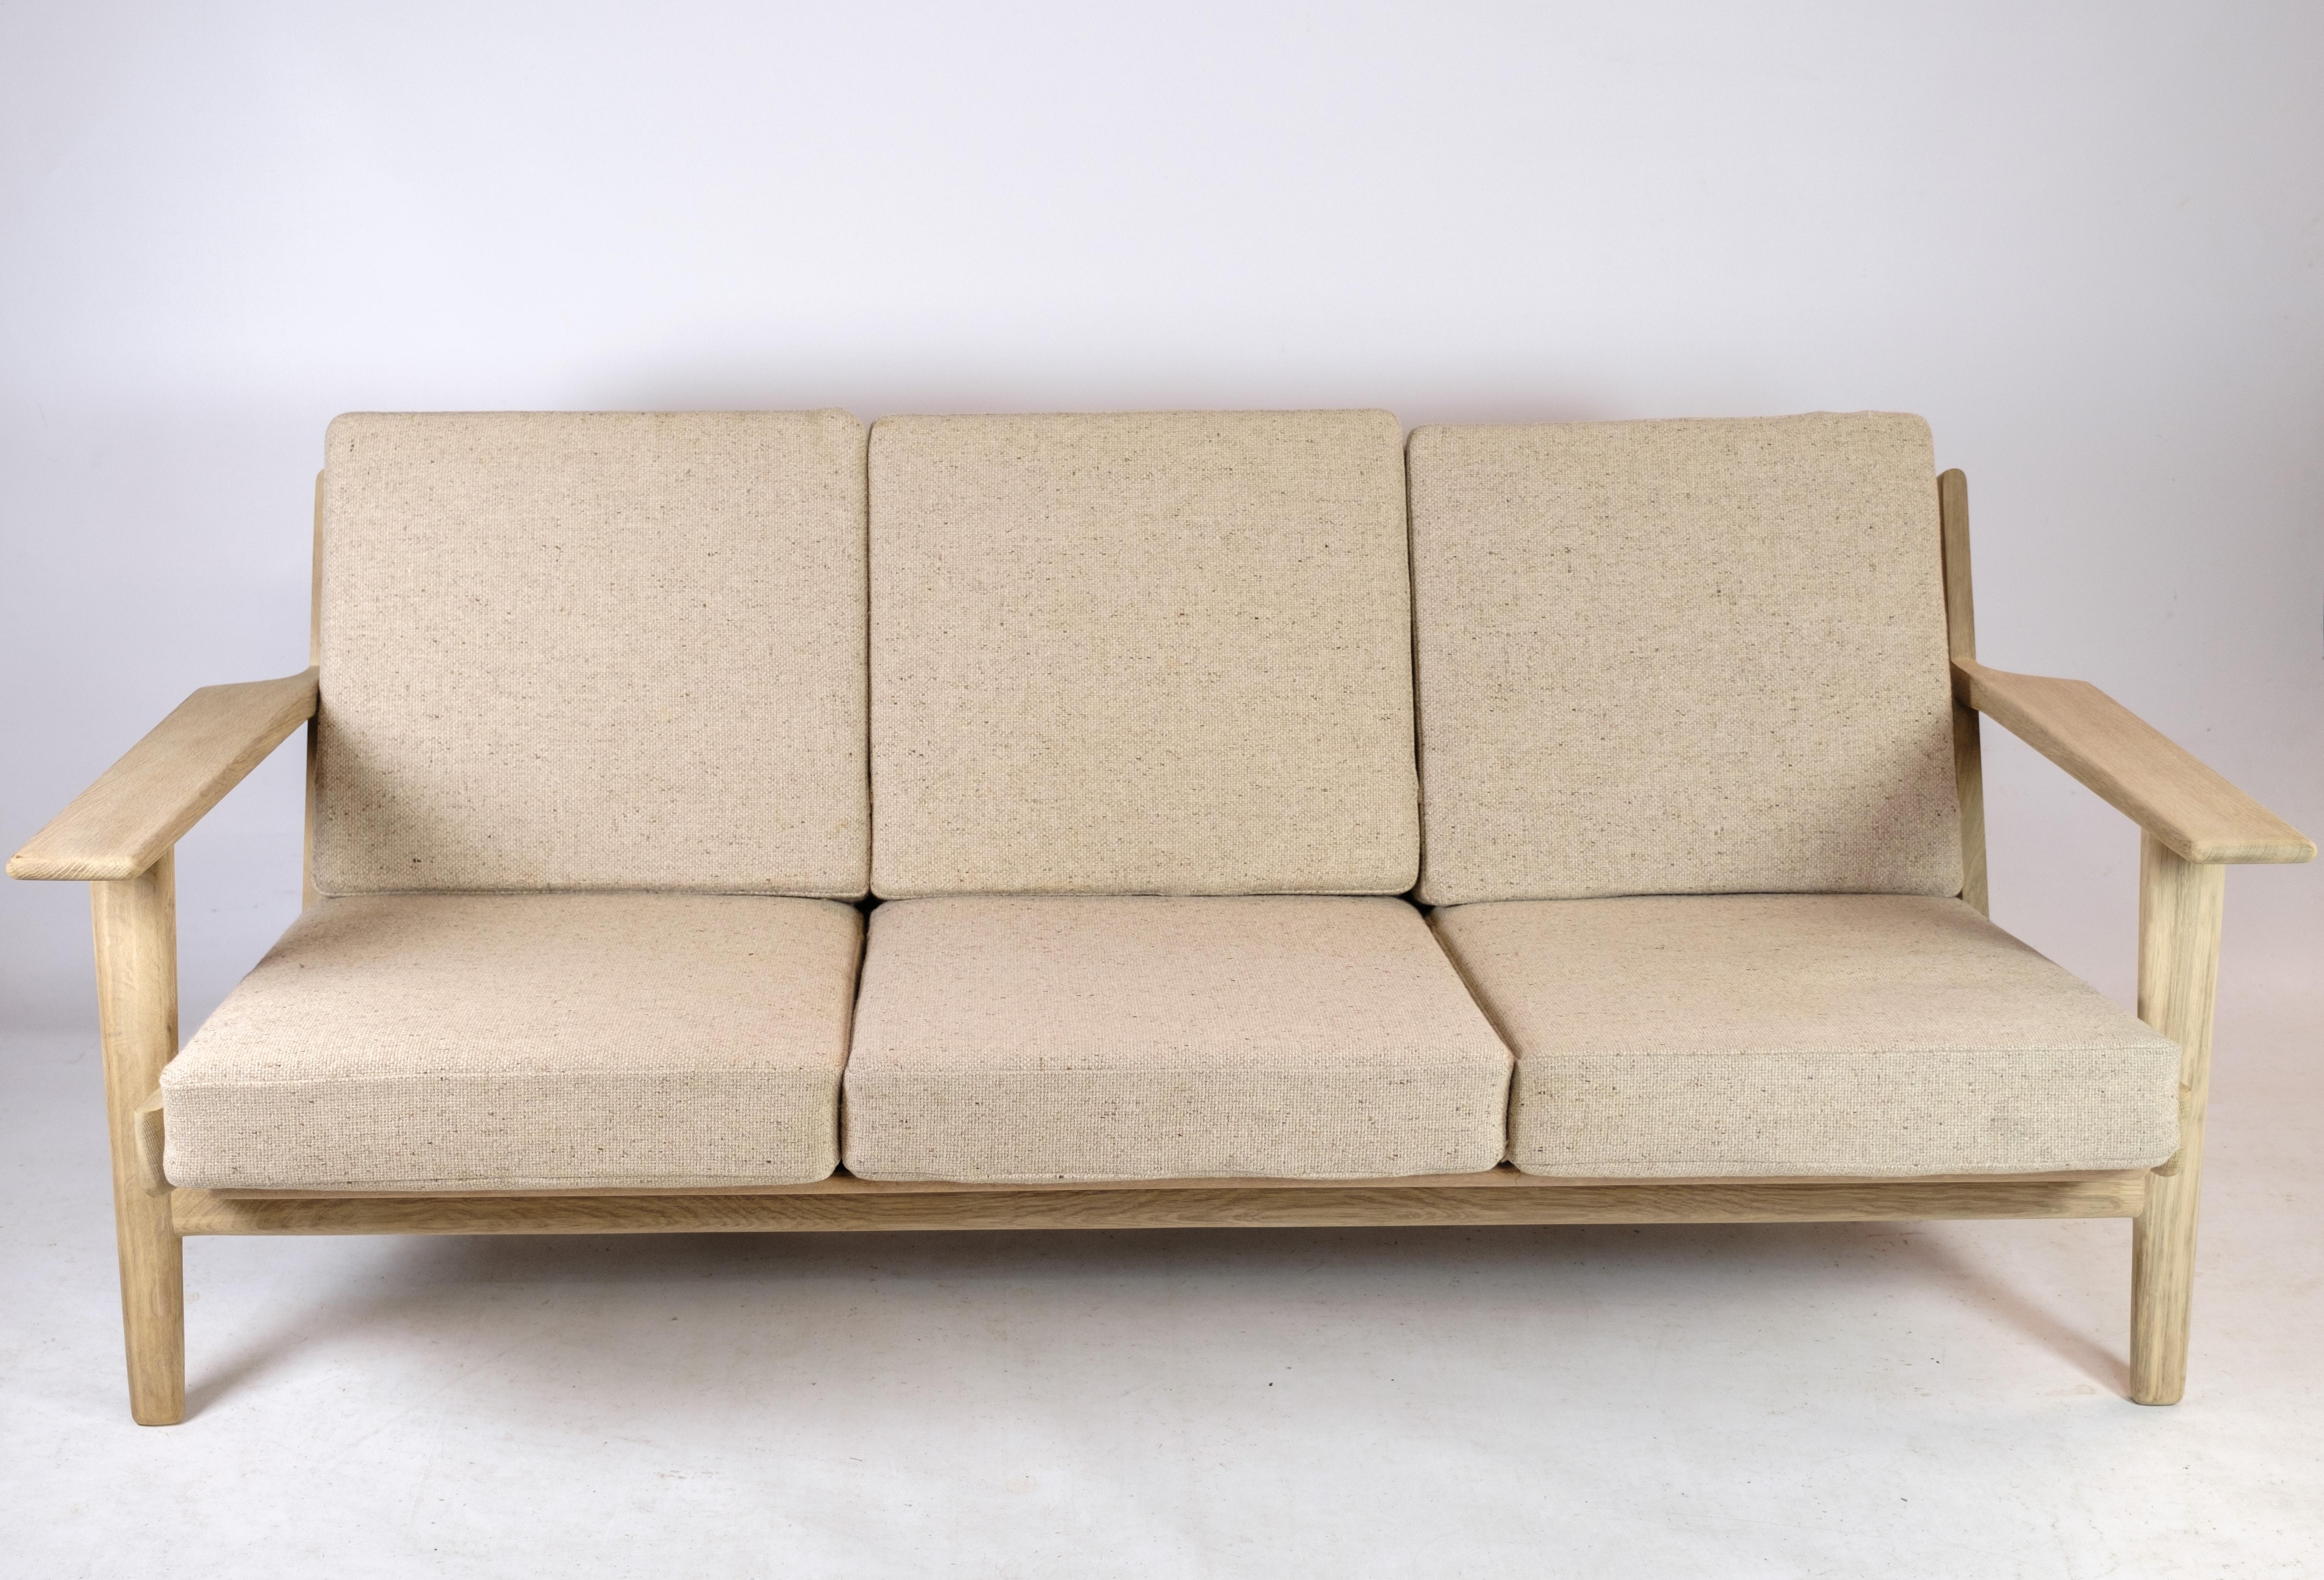 Le modèle GE 290 est un canapé 3 places conçu par le célèbre designer danois Hans J. Wegner en 1953. Le canapé est doté d'un élégant cadre en chêne et de coussins en tissu clair, ce qui lui confère une allure élégante et intemporelle. Il est